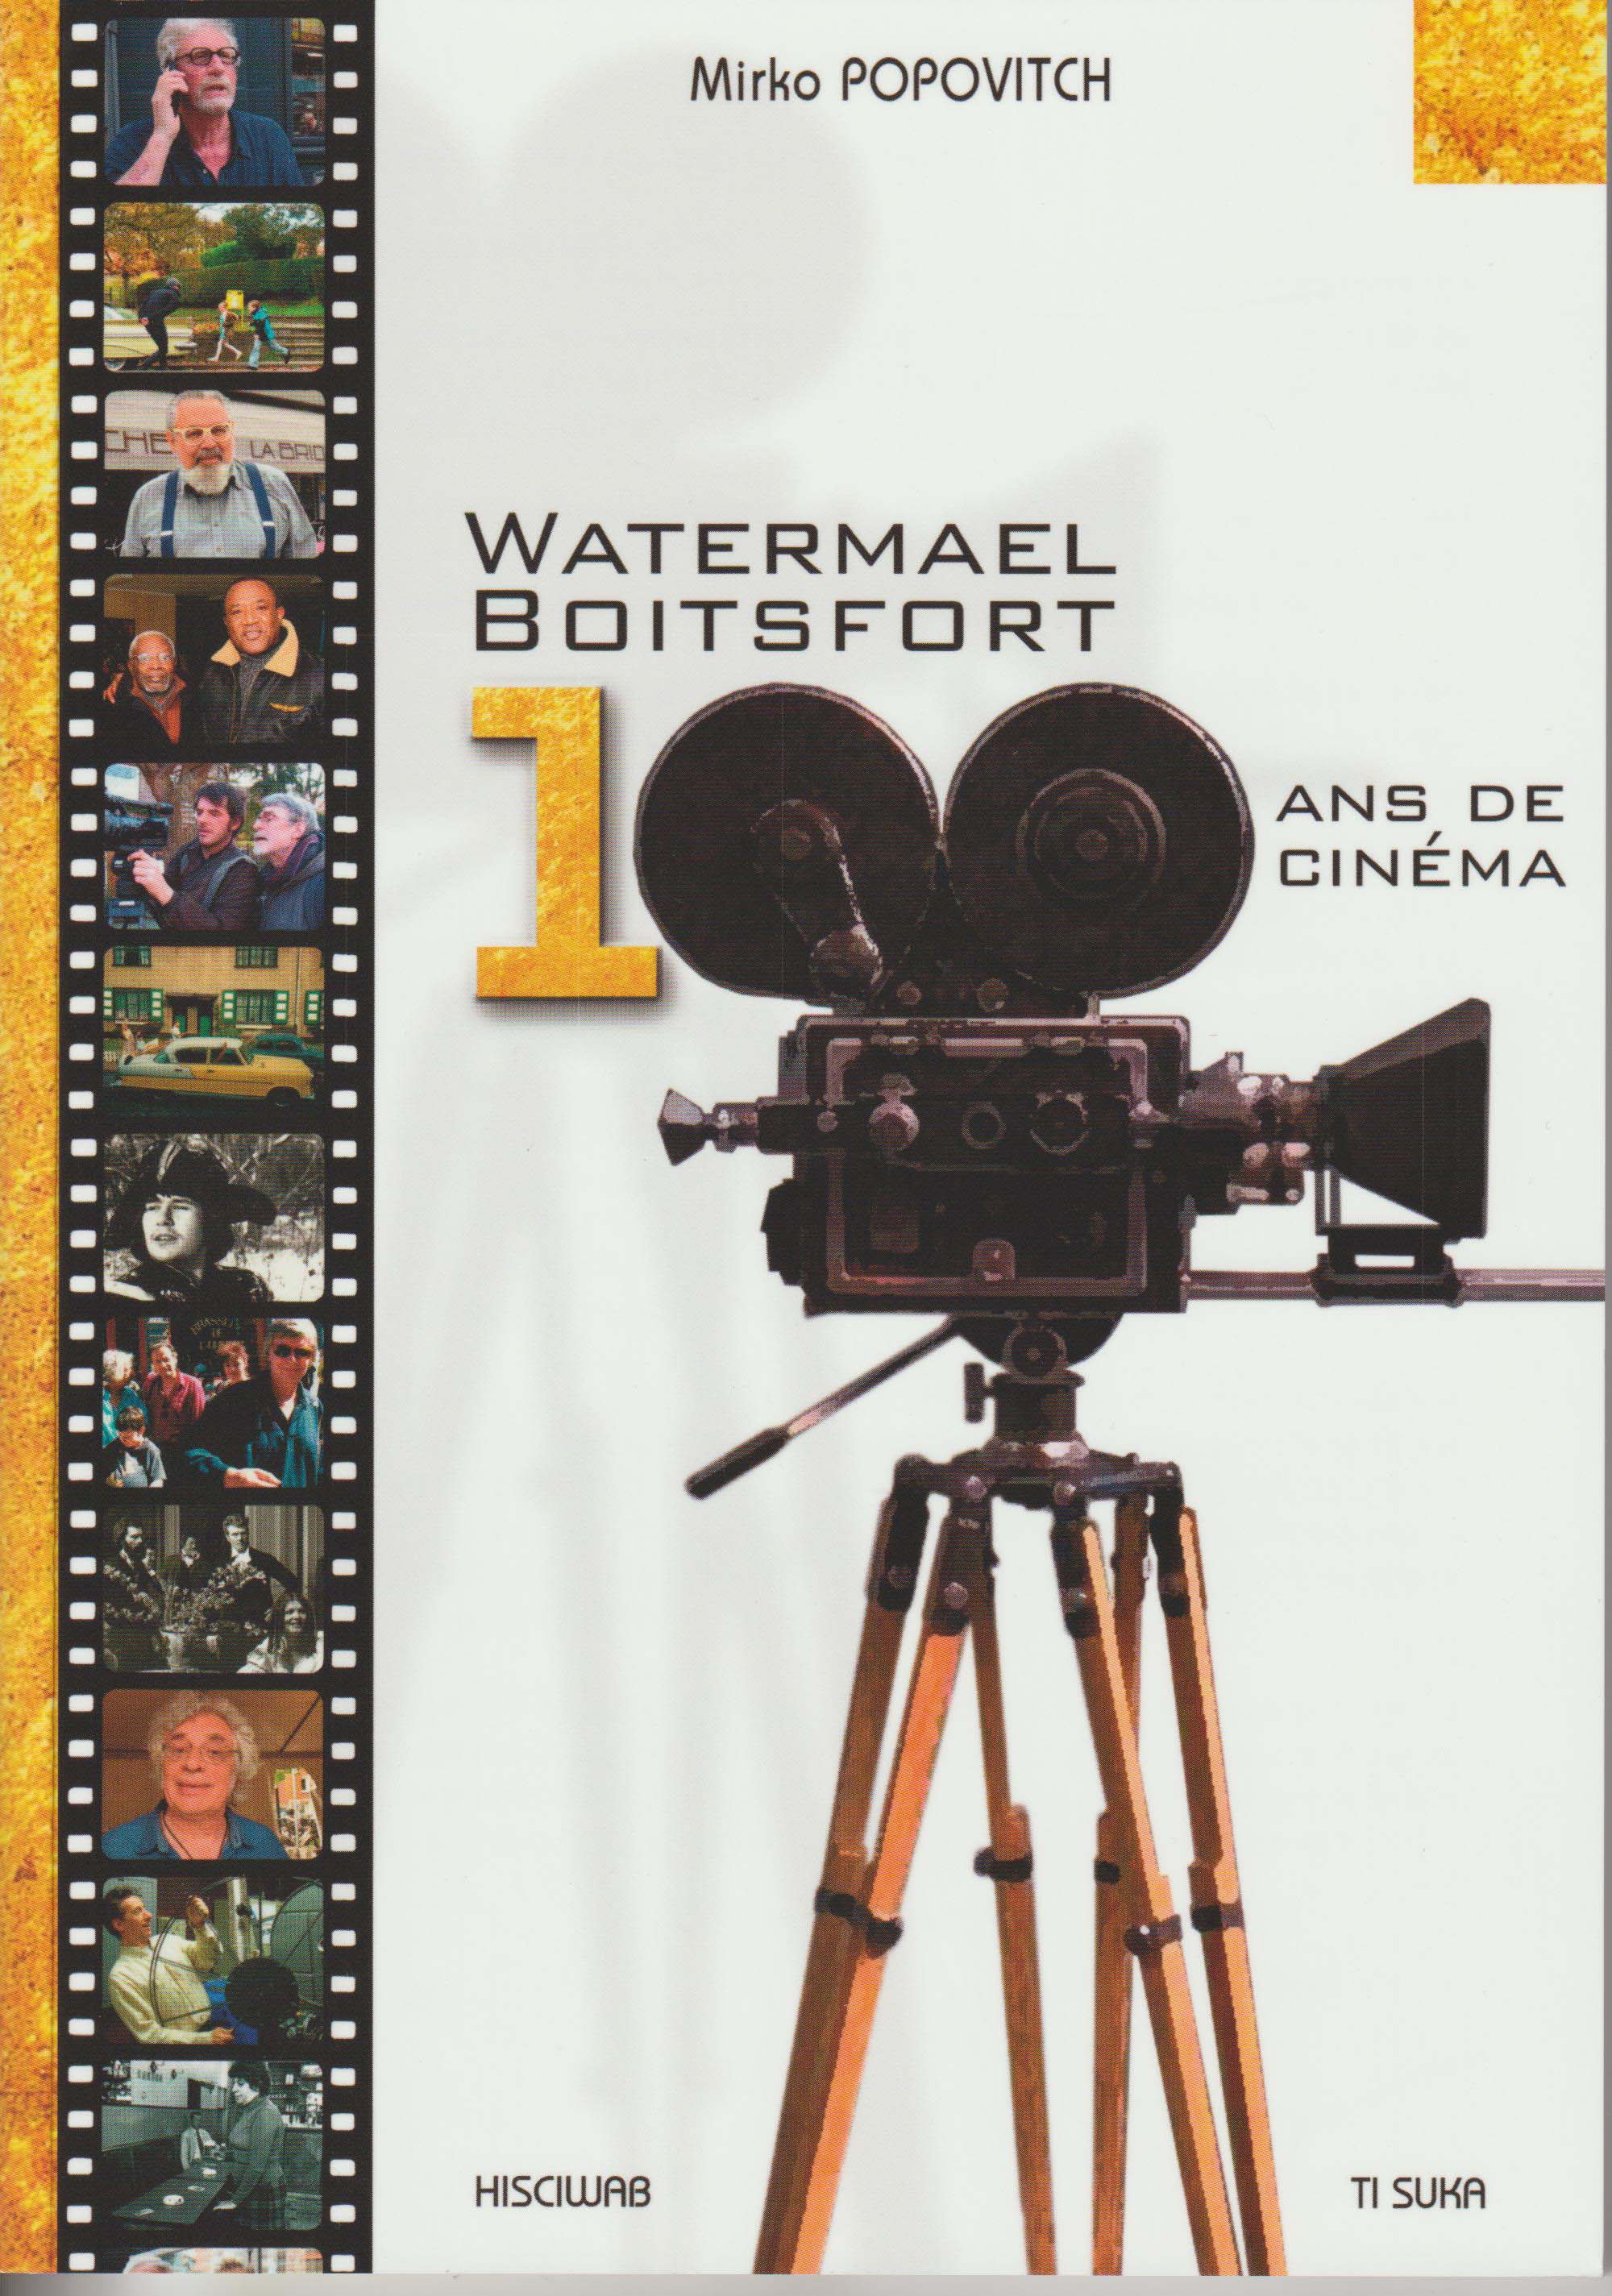 100 ans de cinéma à Watermael Boitsfort de Mirko Popovitch